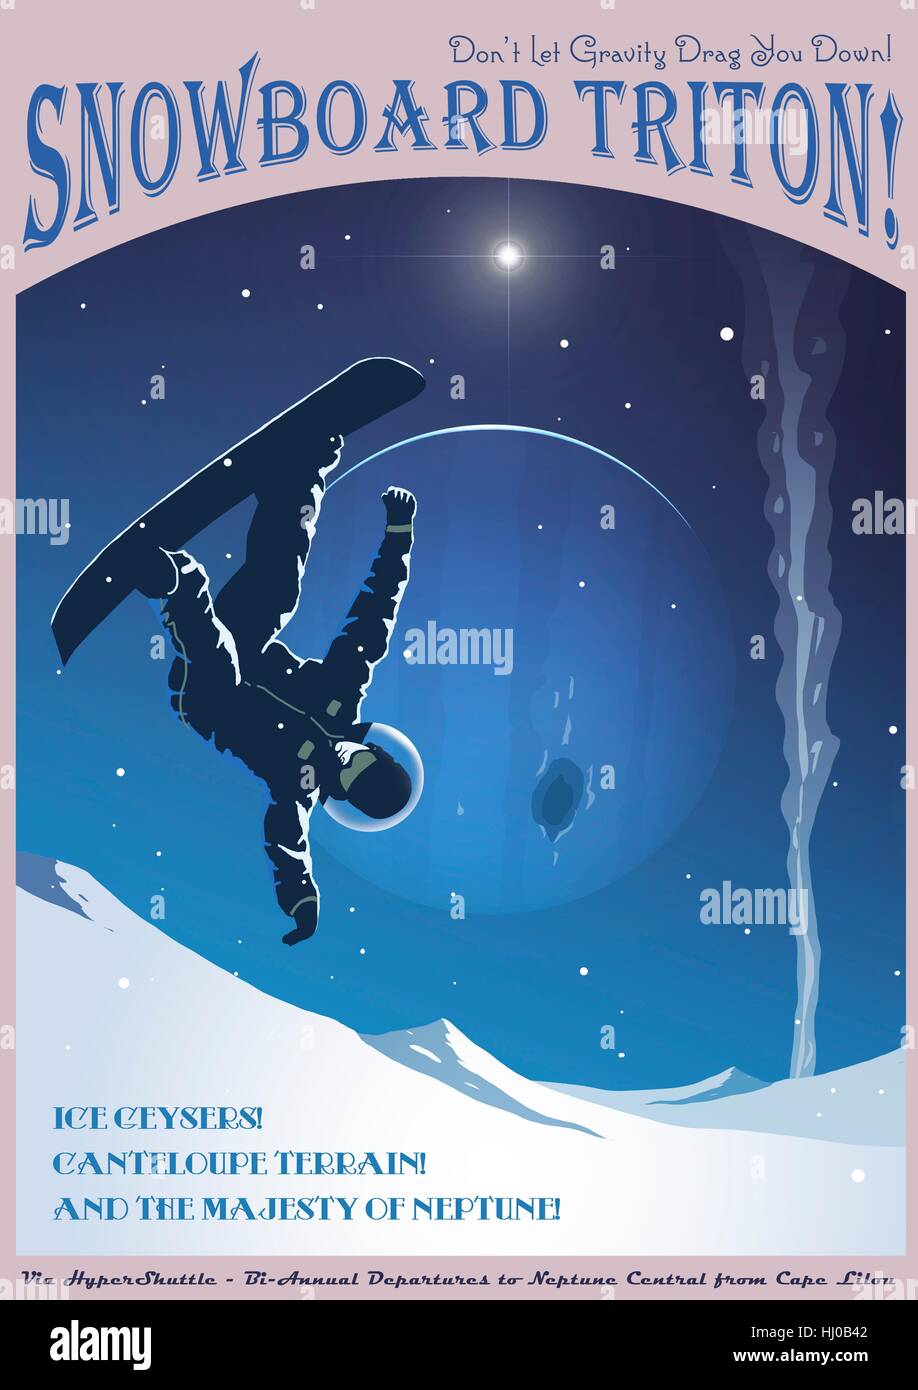 Triton ist der größte Mond des Gases riesigen Neptun. Es ist berühmt für seine ungerade Gelände (z. B. die Melone-Gelände) und seine cryonic Geysire. Dieses faux Reisen Poster präsentiert Snowboarden auf Triton als touristische Attraktion im Art Deco Stil. Stockfoto